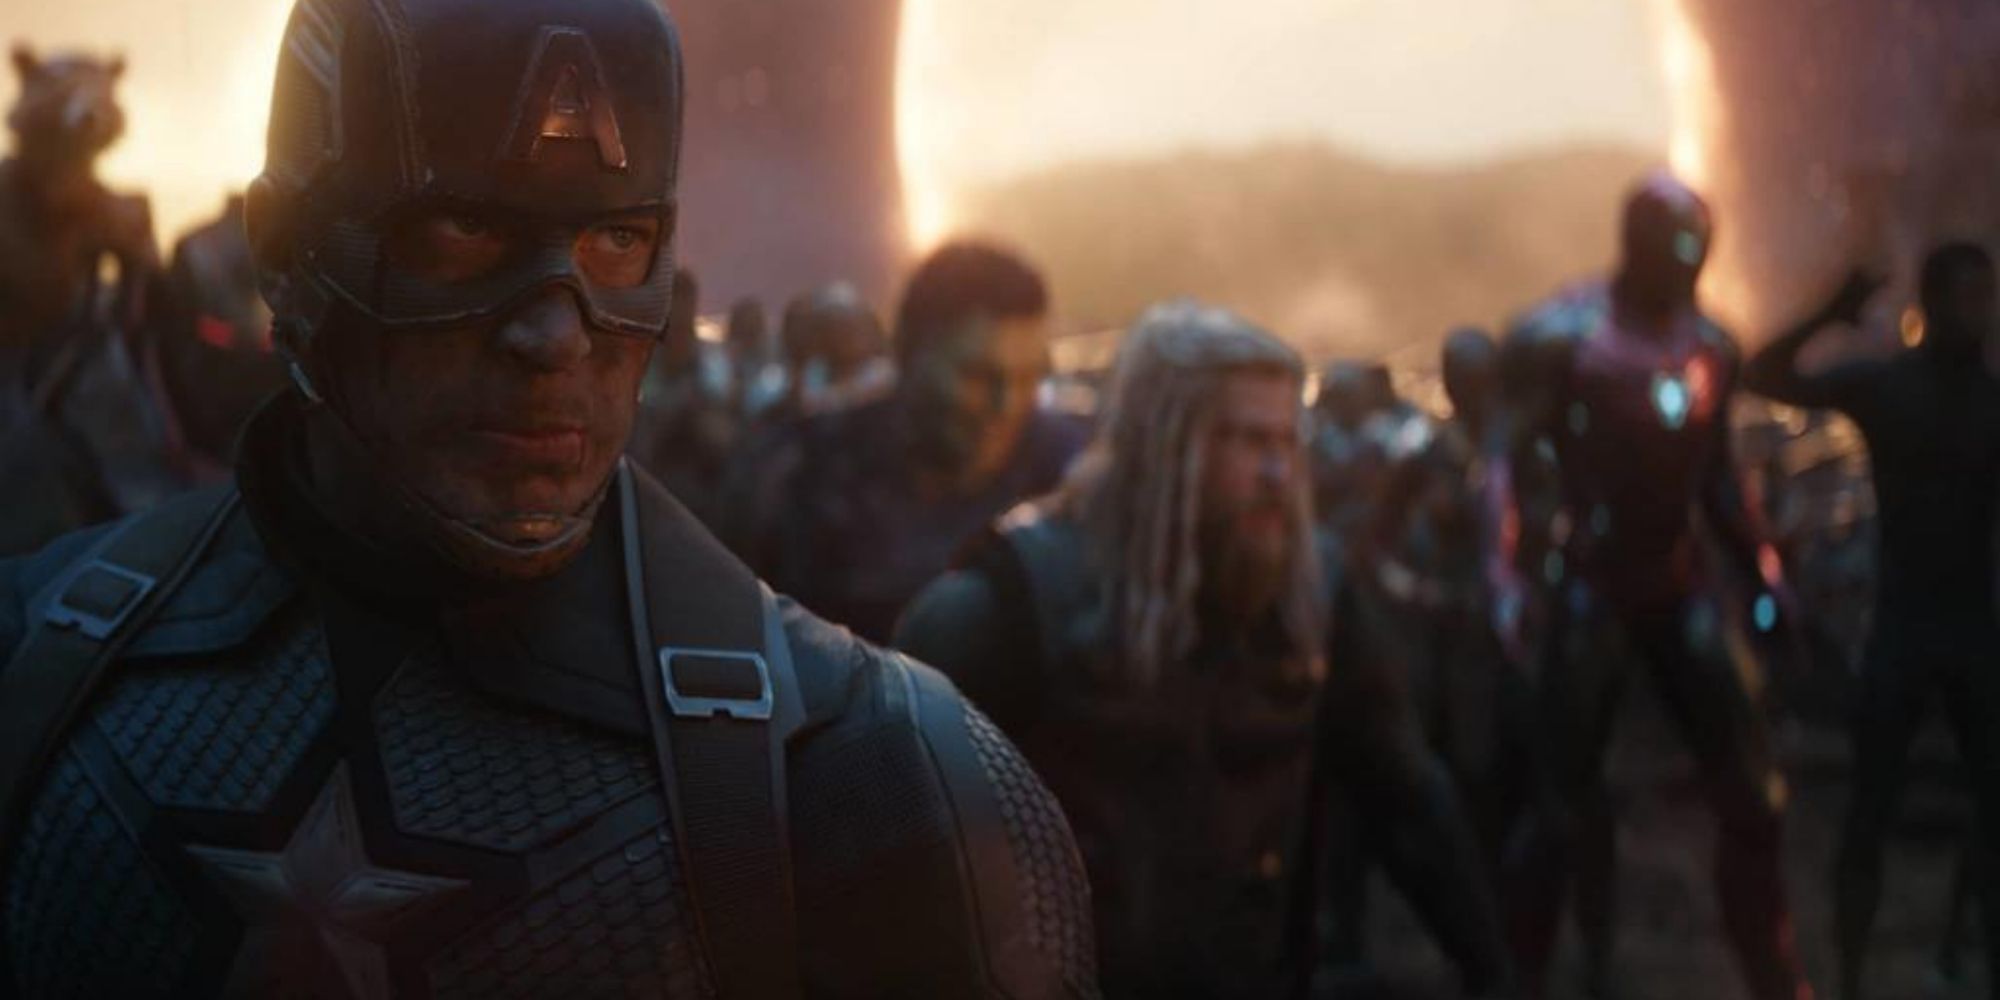 Chris Evans as Captain America leading the Avengers into battle in Avengers: Endgame